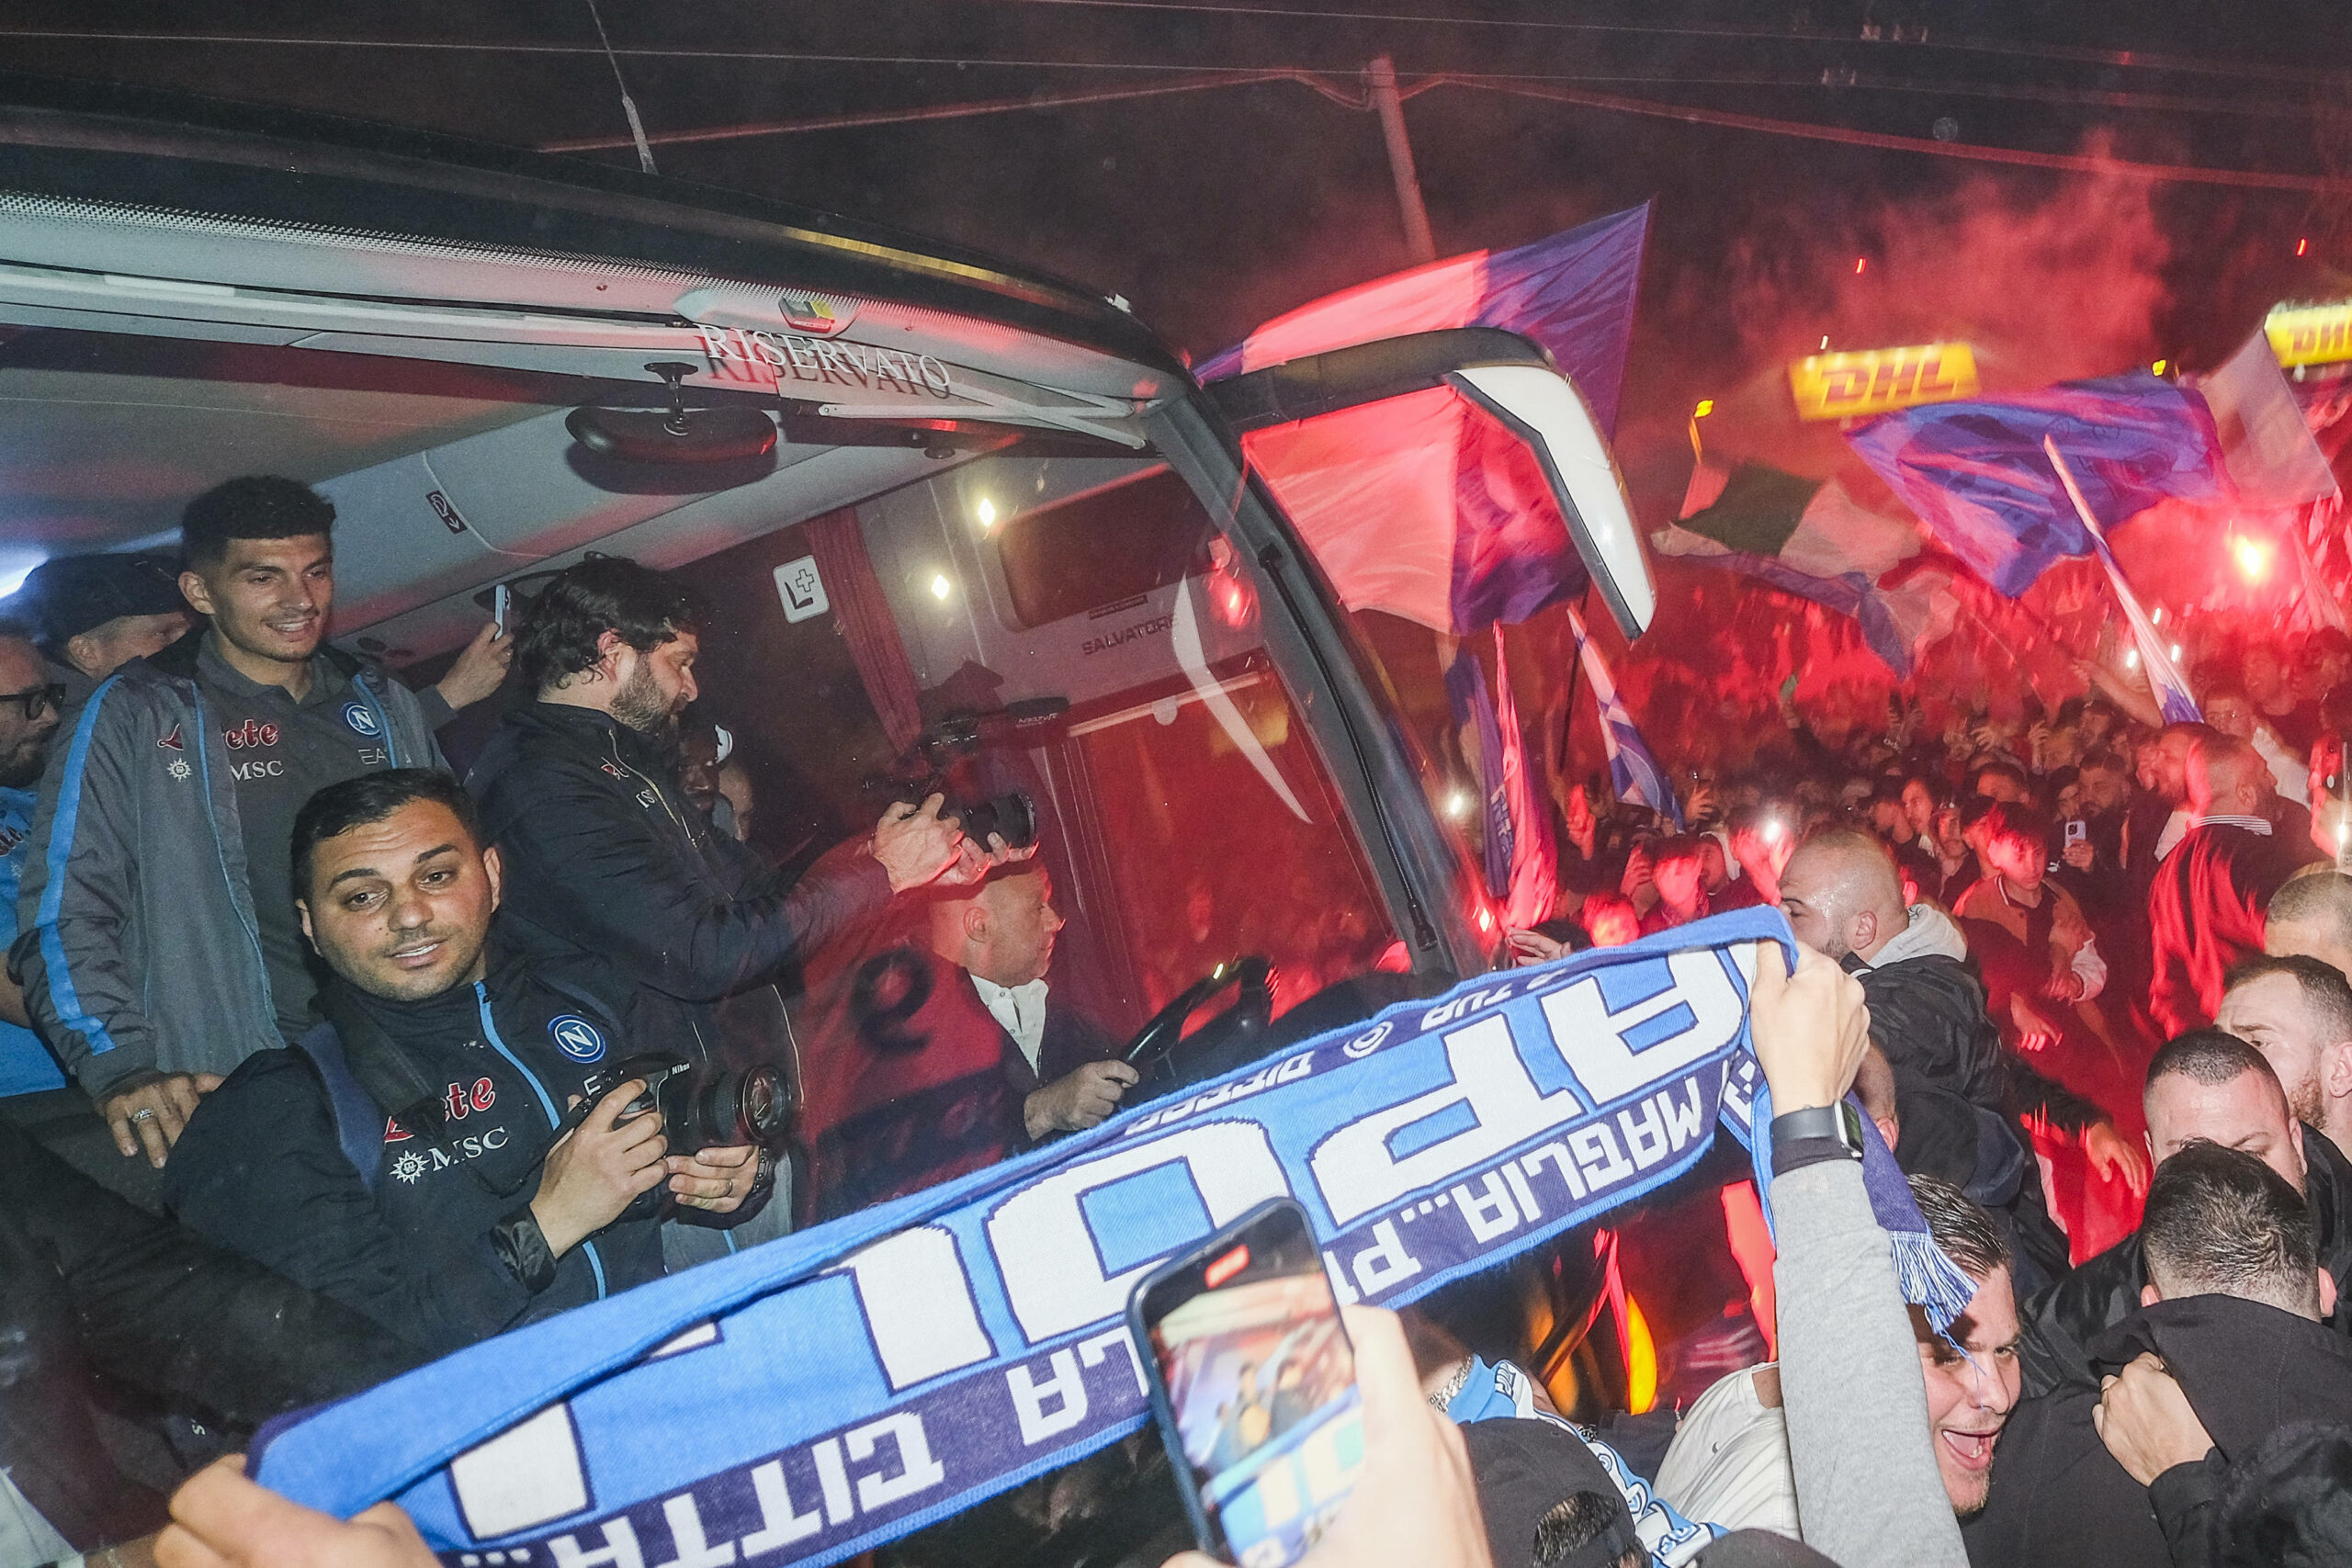 Der Bus vom SSC Neapel umringt von Fans. Im Hintergrund Pyrotechnik-